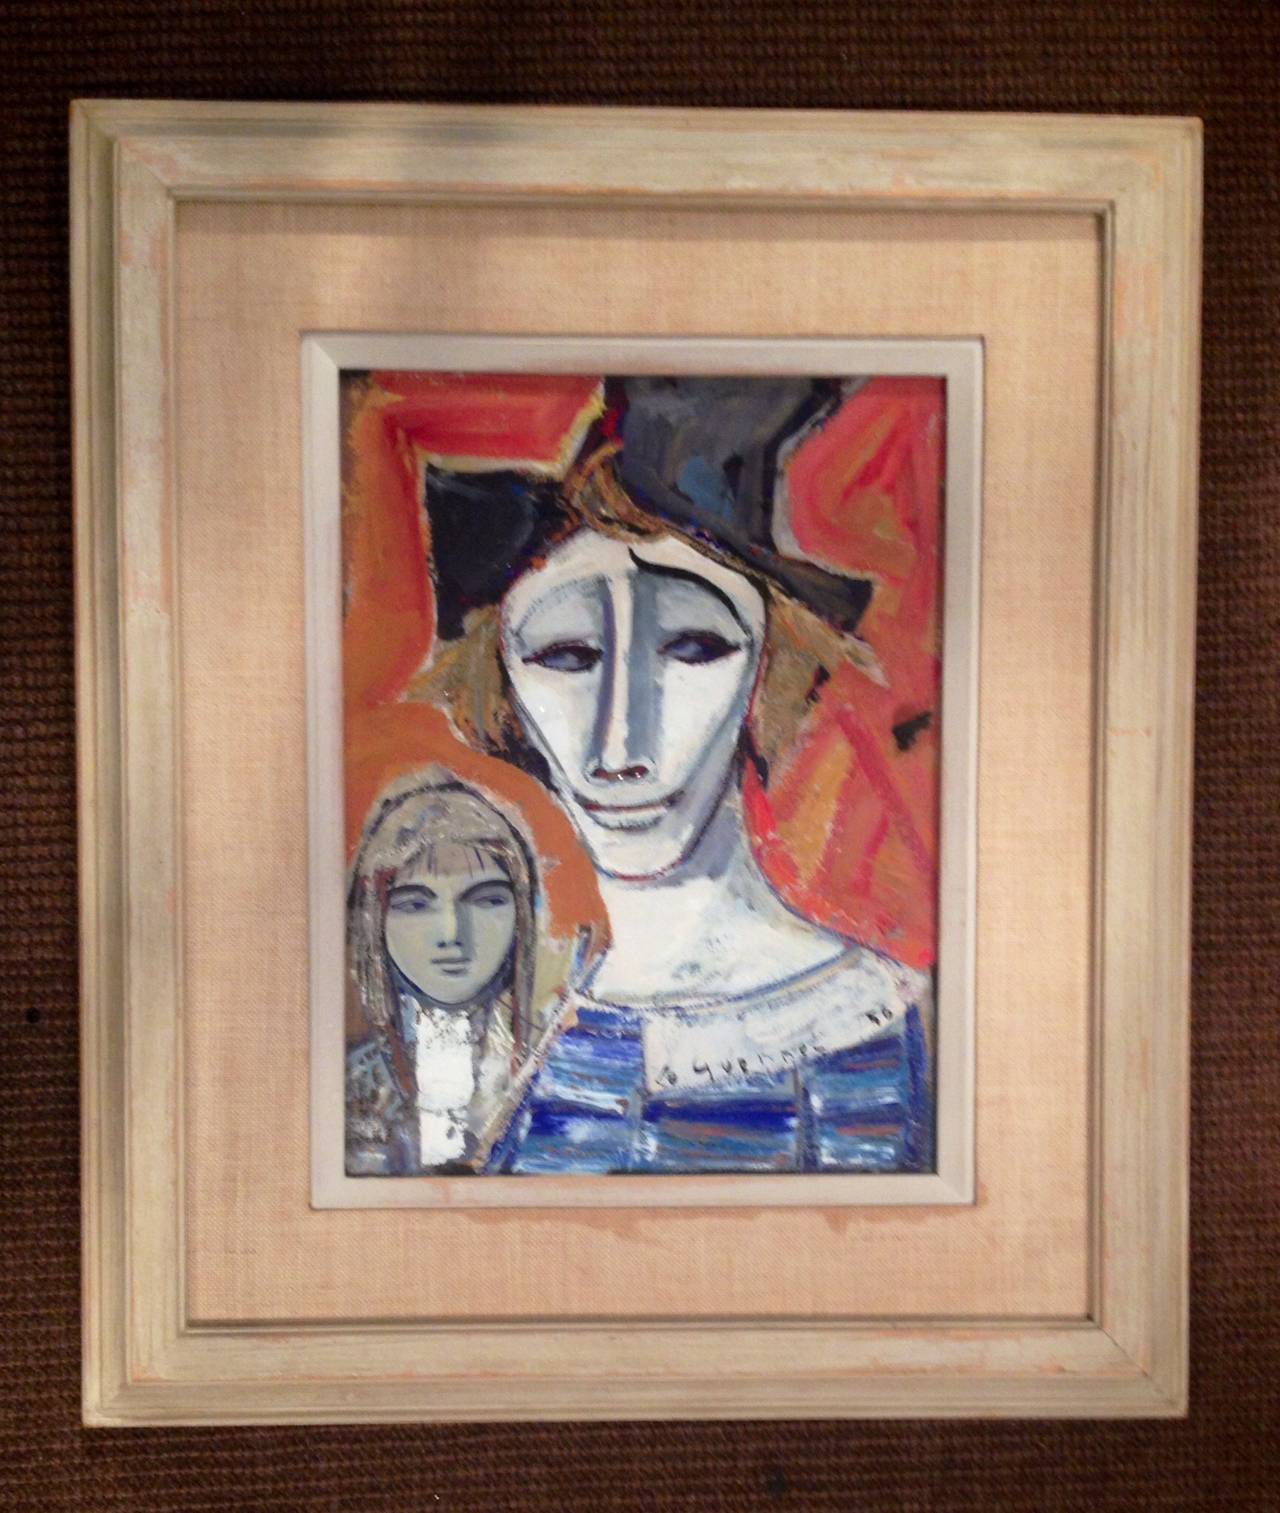 Berühmter französischer Künstler Jean Le Guennec {1924-1986} seine Kunst wurde für mehr als 500.000 Euro verkauft, Aquarell und Gouache, in originalem cremefarbenem Rahmen.i